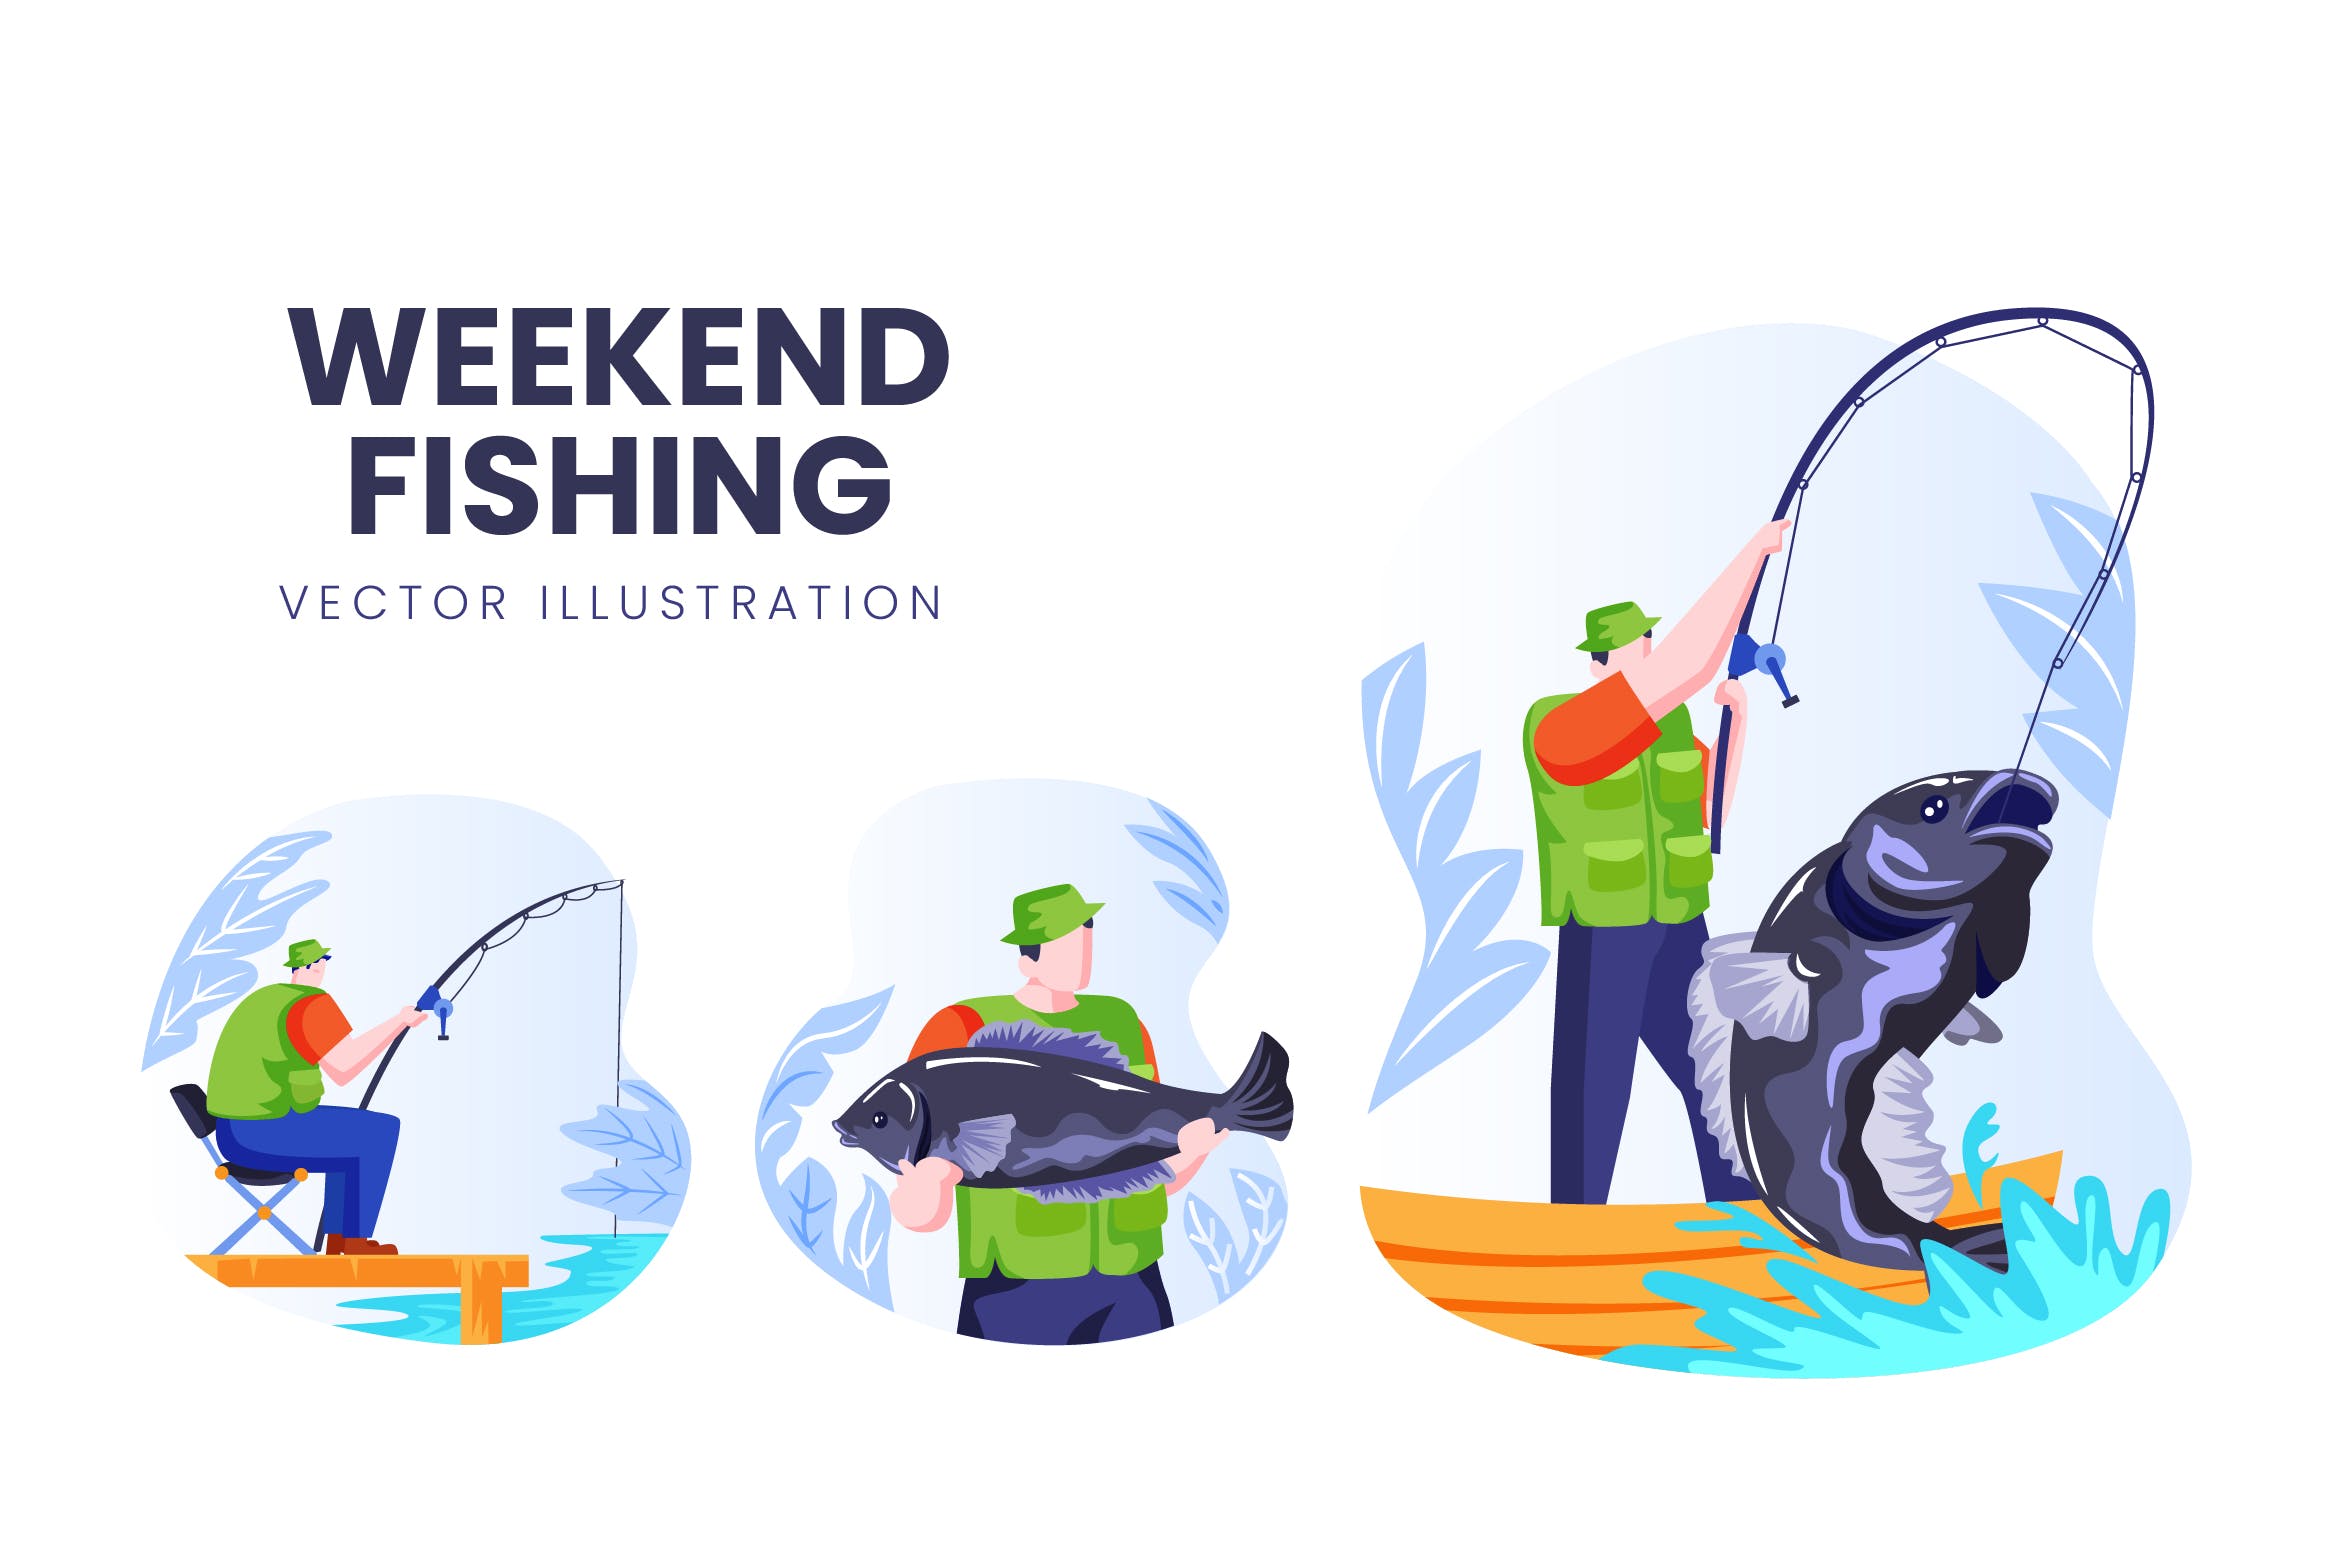 钓鱼爱好者人物形象非凡图库精选手绘插画矢量素材 Weekend Fishing Vector Character Set插图